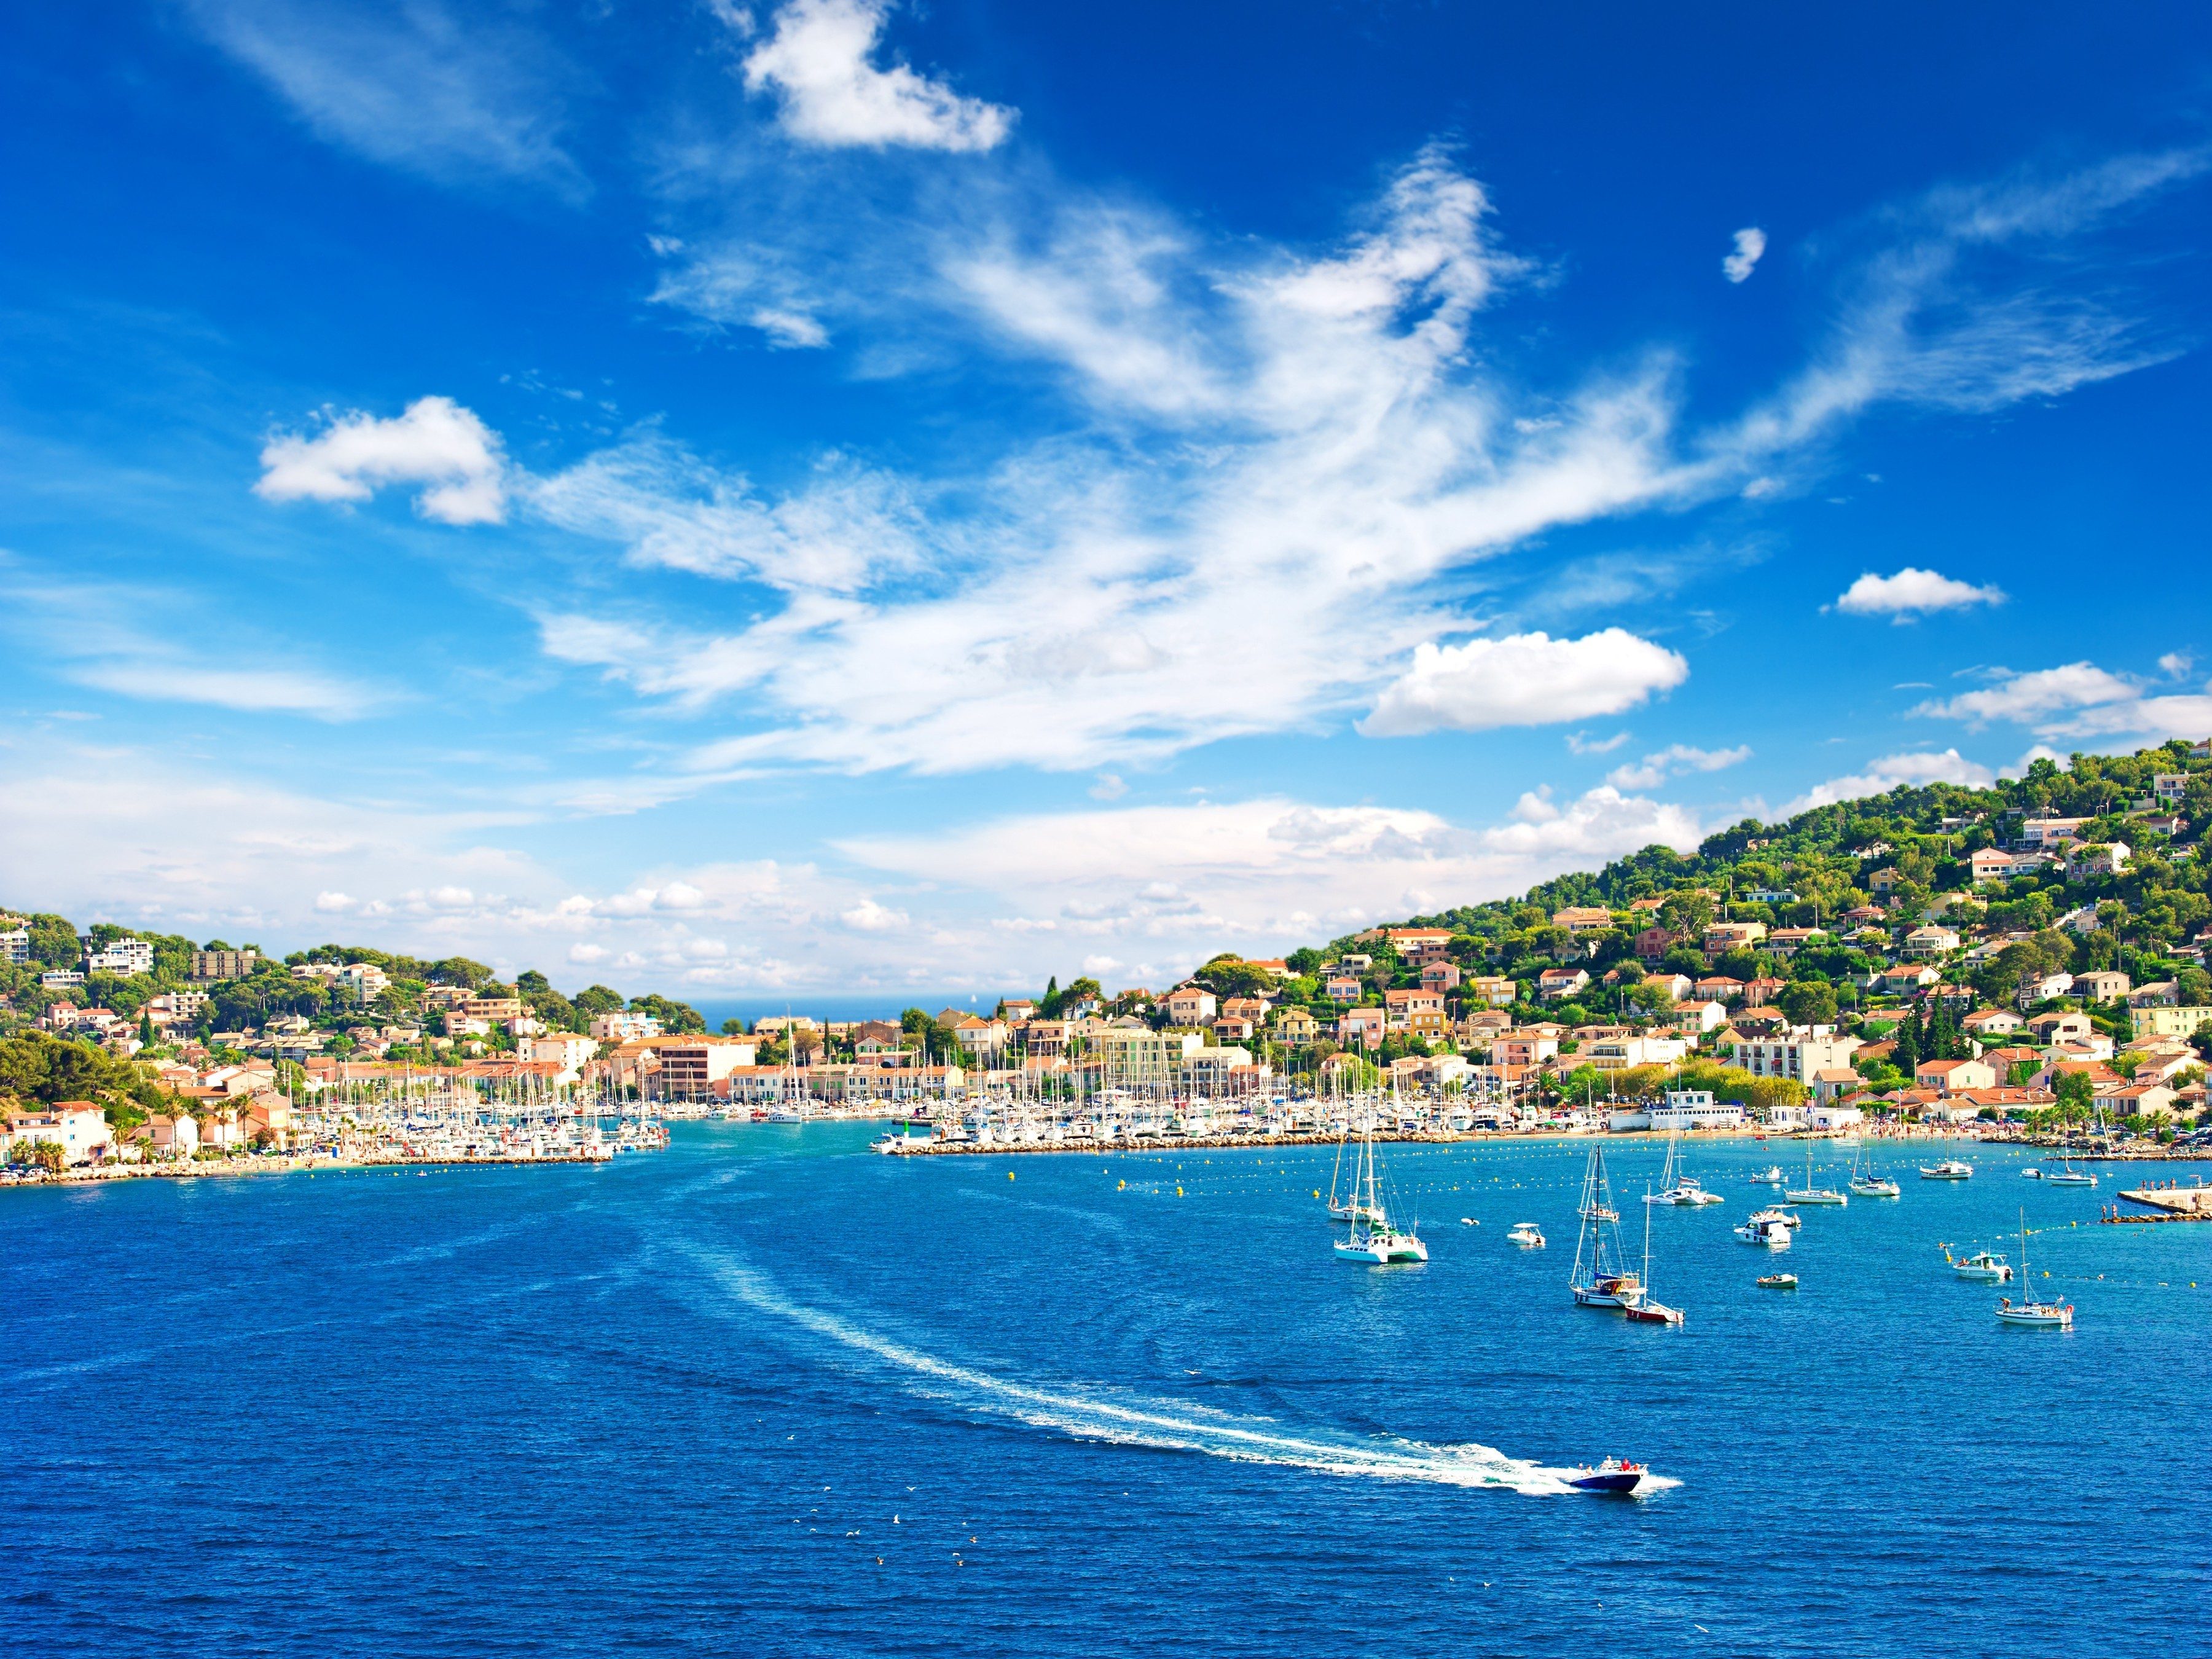 World's 10 Sexiest Places: Saint-Tropez, France